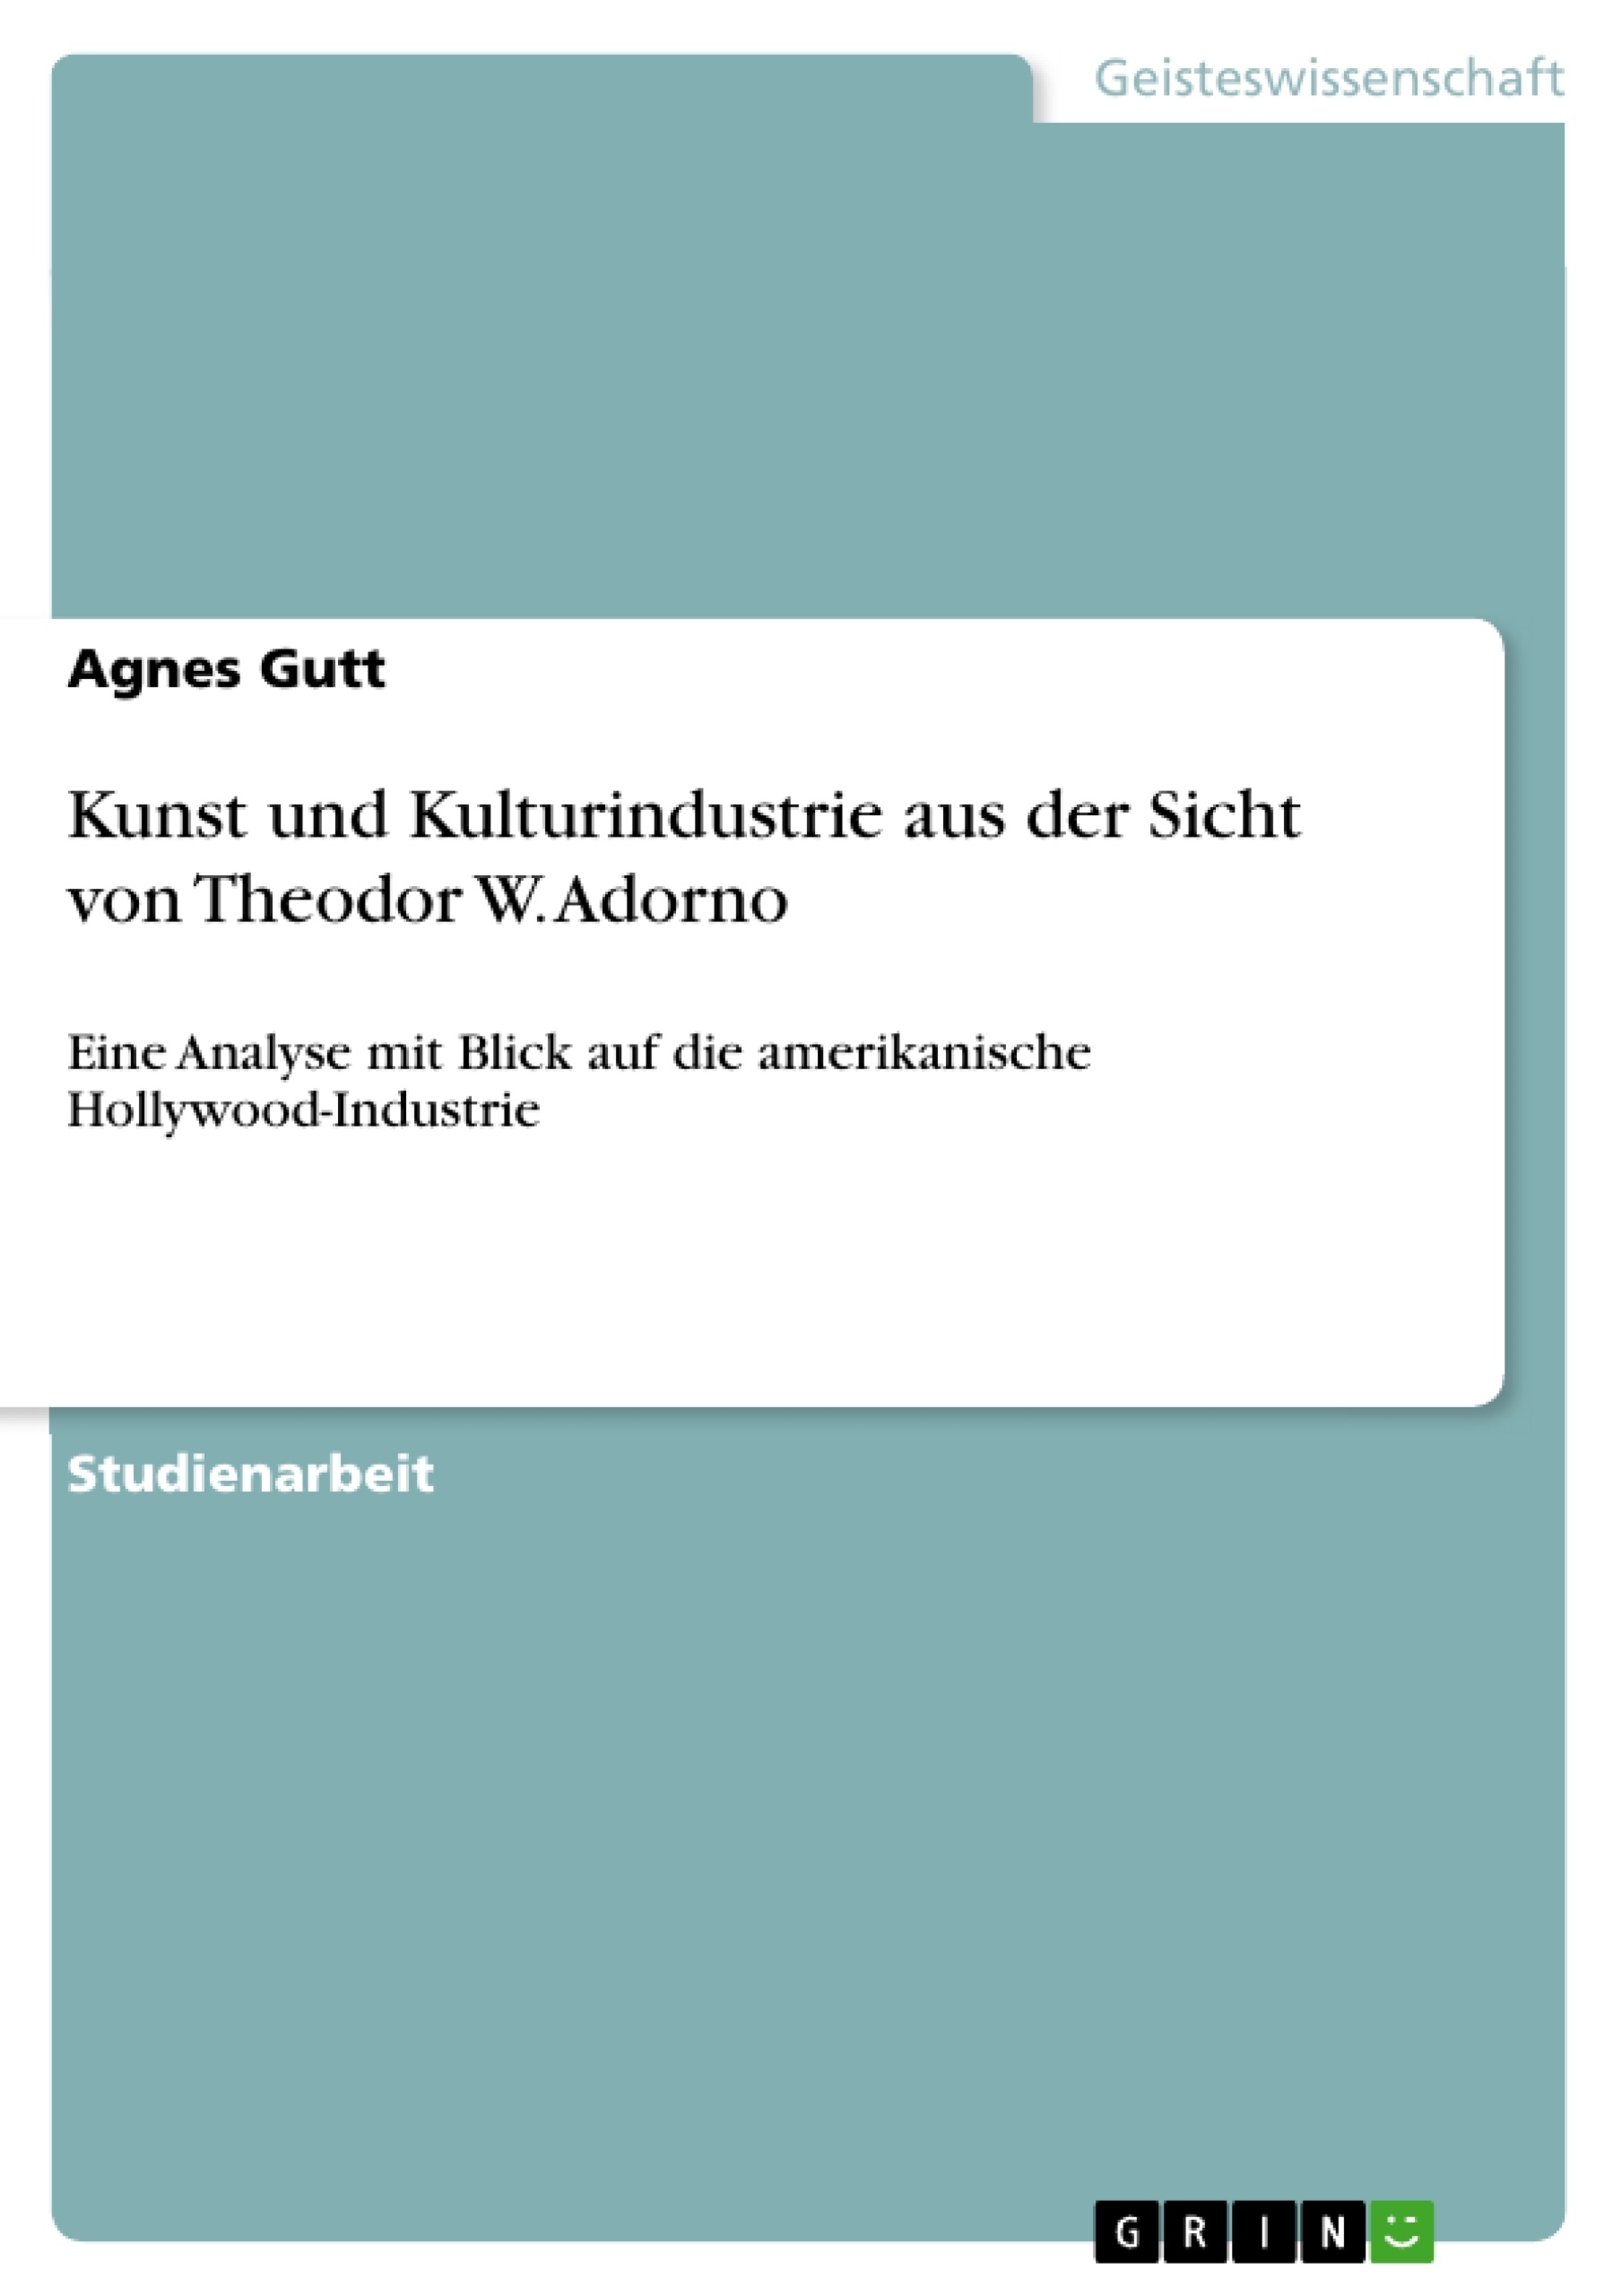 Título: Kunst und Kulturindustrie aus der Sicht von Theodor W. Adorno